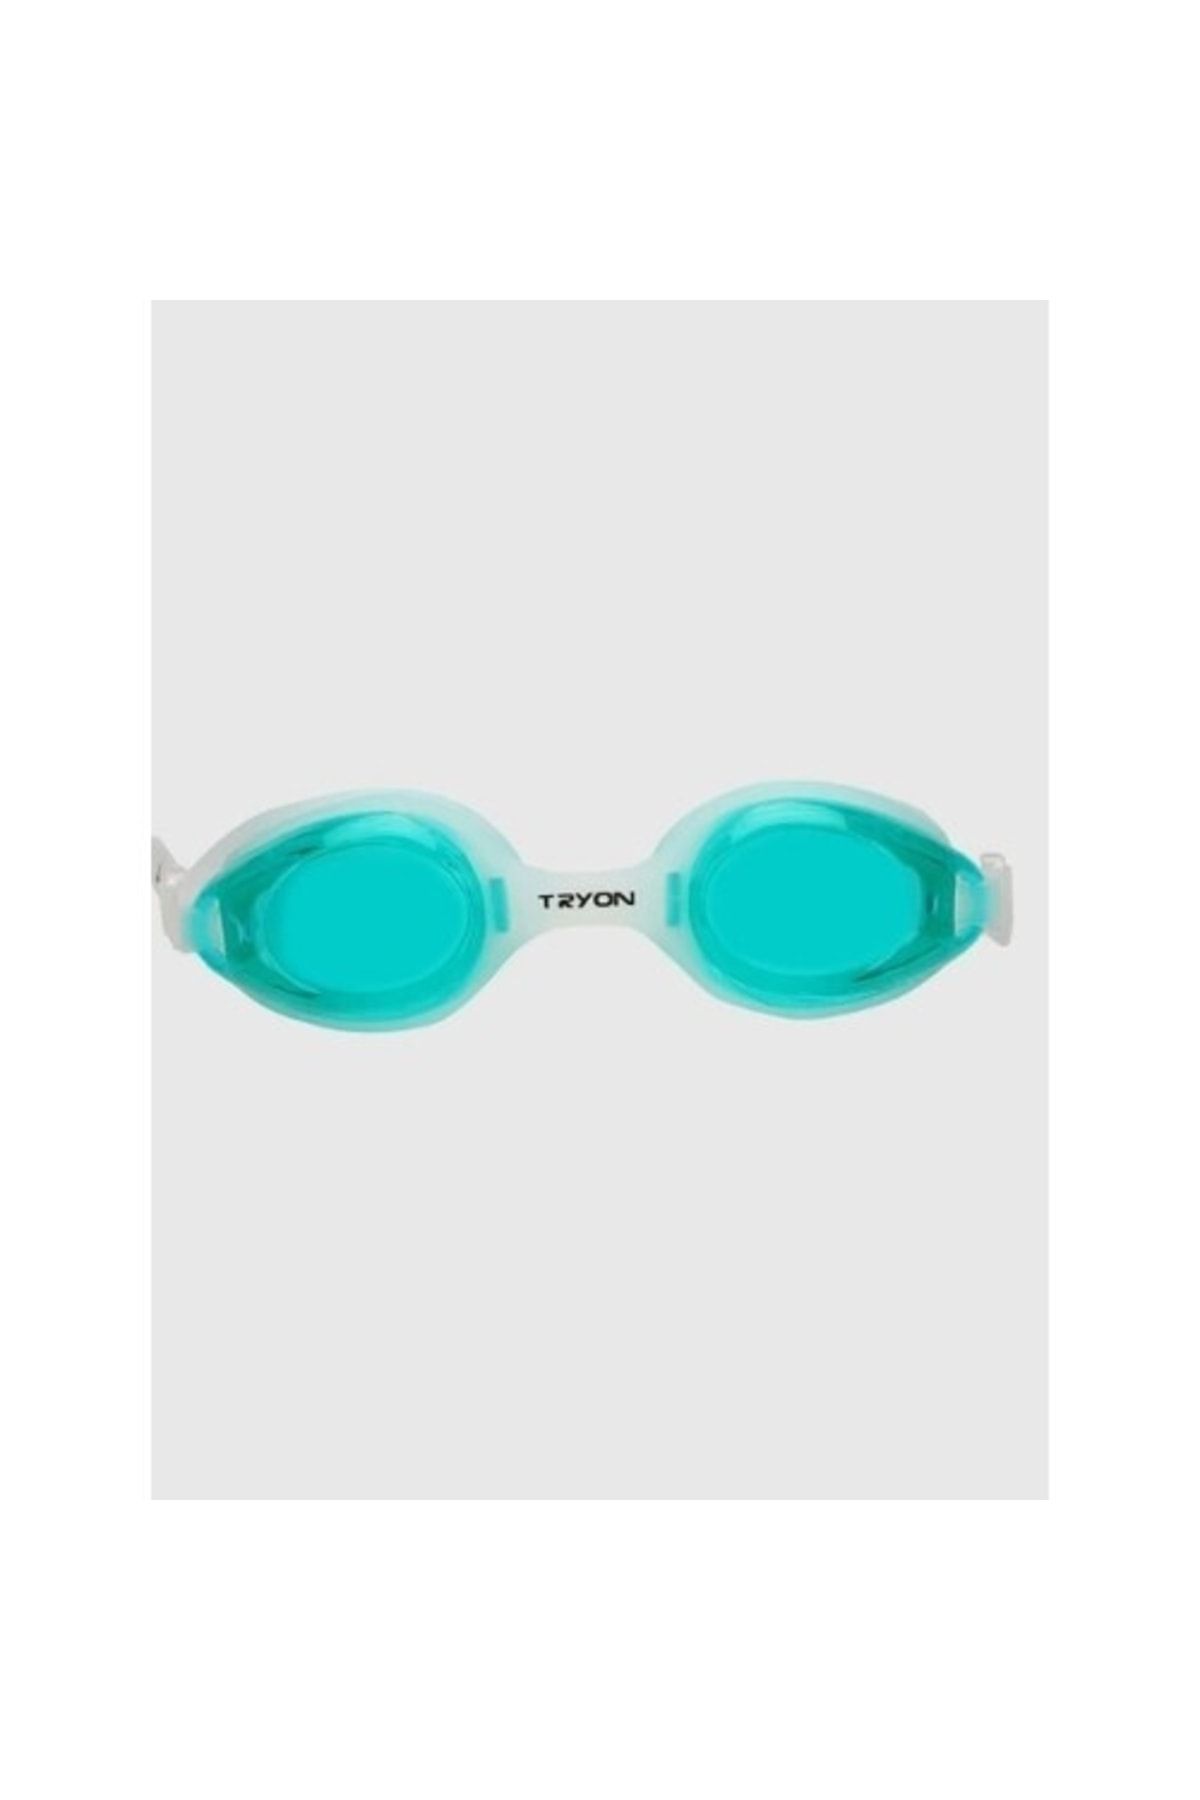 TRYON Yg-2030 Su Yeşili Yüzücü Gözlüğü Junıor